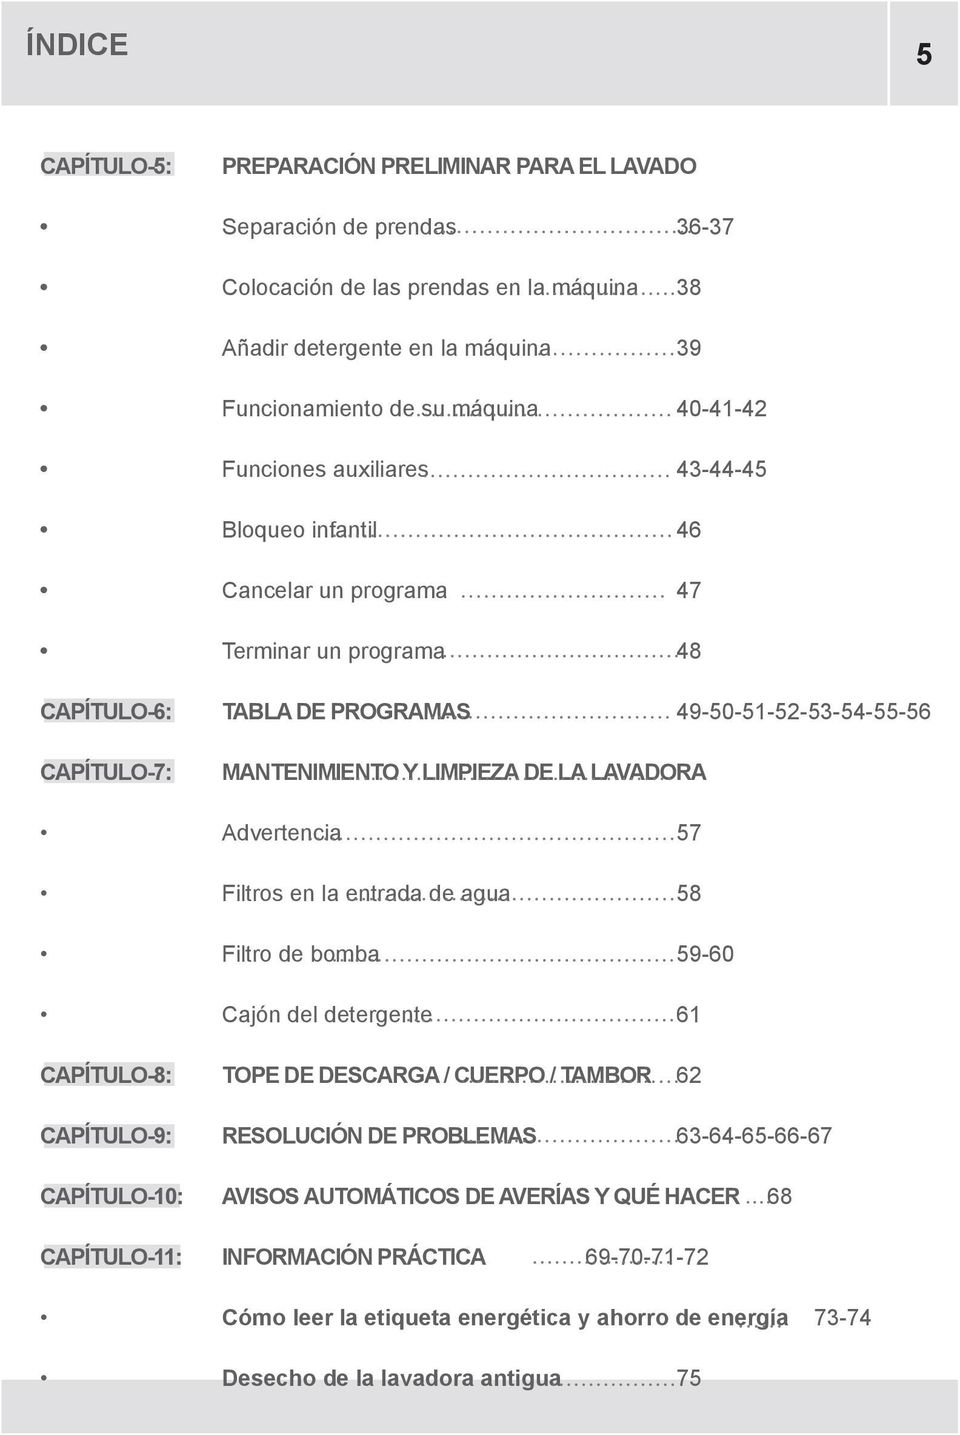 DE LA LAVADORA Advertencia 57 Filtros en la entrada de agua 58 Filtro de bomba 59-60 Cajón del detergente 61 CAPÍTULO-8: TOPE DE DESCARGA / CUERPO / TAMBOR 62 CAPÍTULO-9: RESOLUCIÓN DE PROBLEMAS